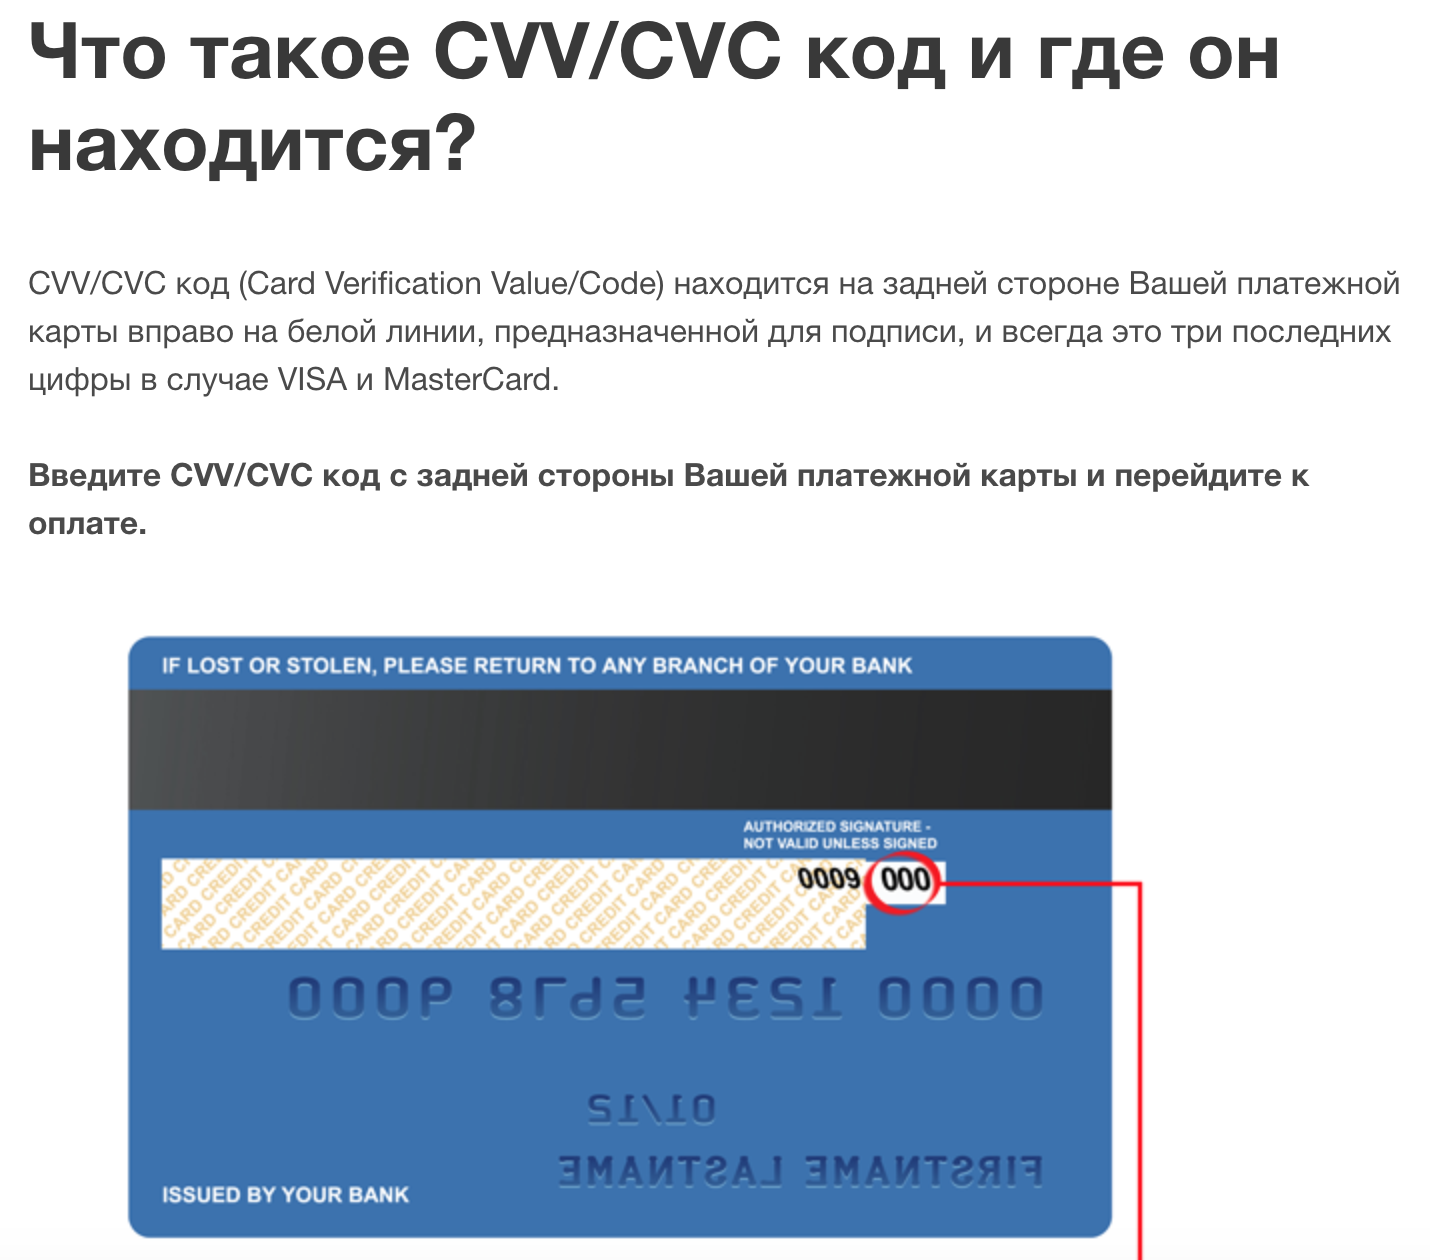 Что такое cvc на банковской карте? что такое cvc или cvv код на банковской карте и где он находится